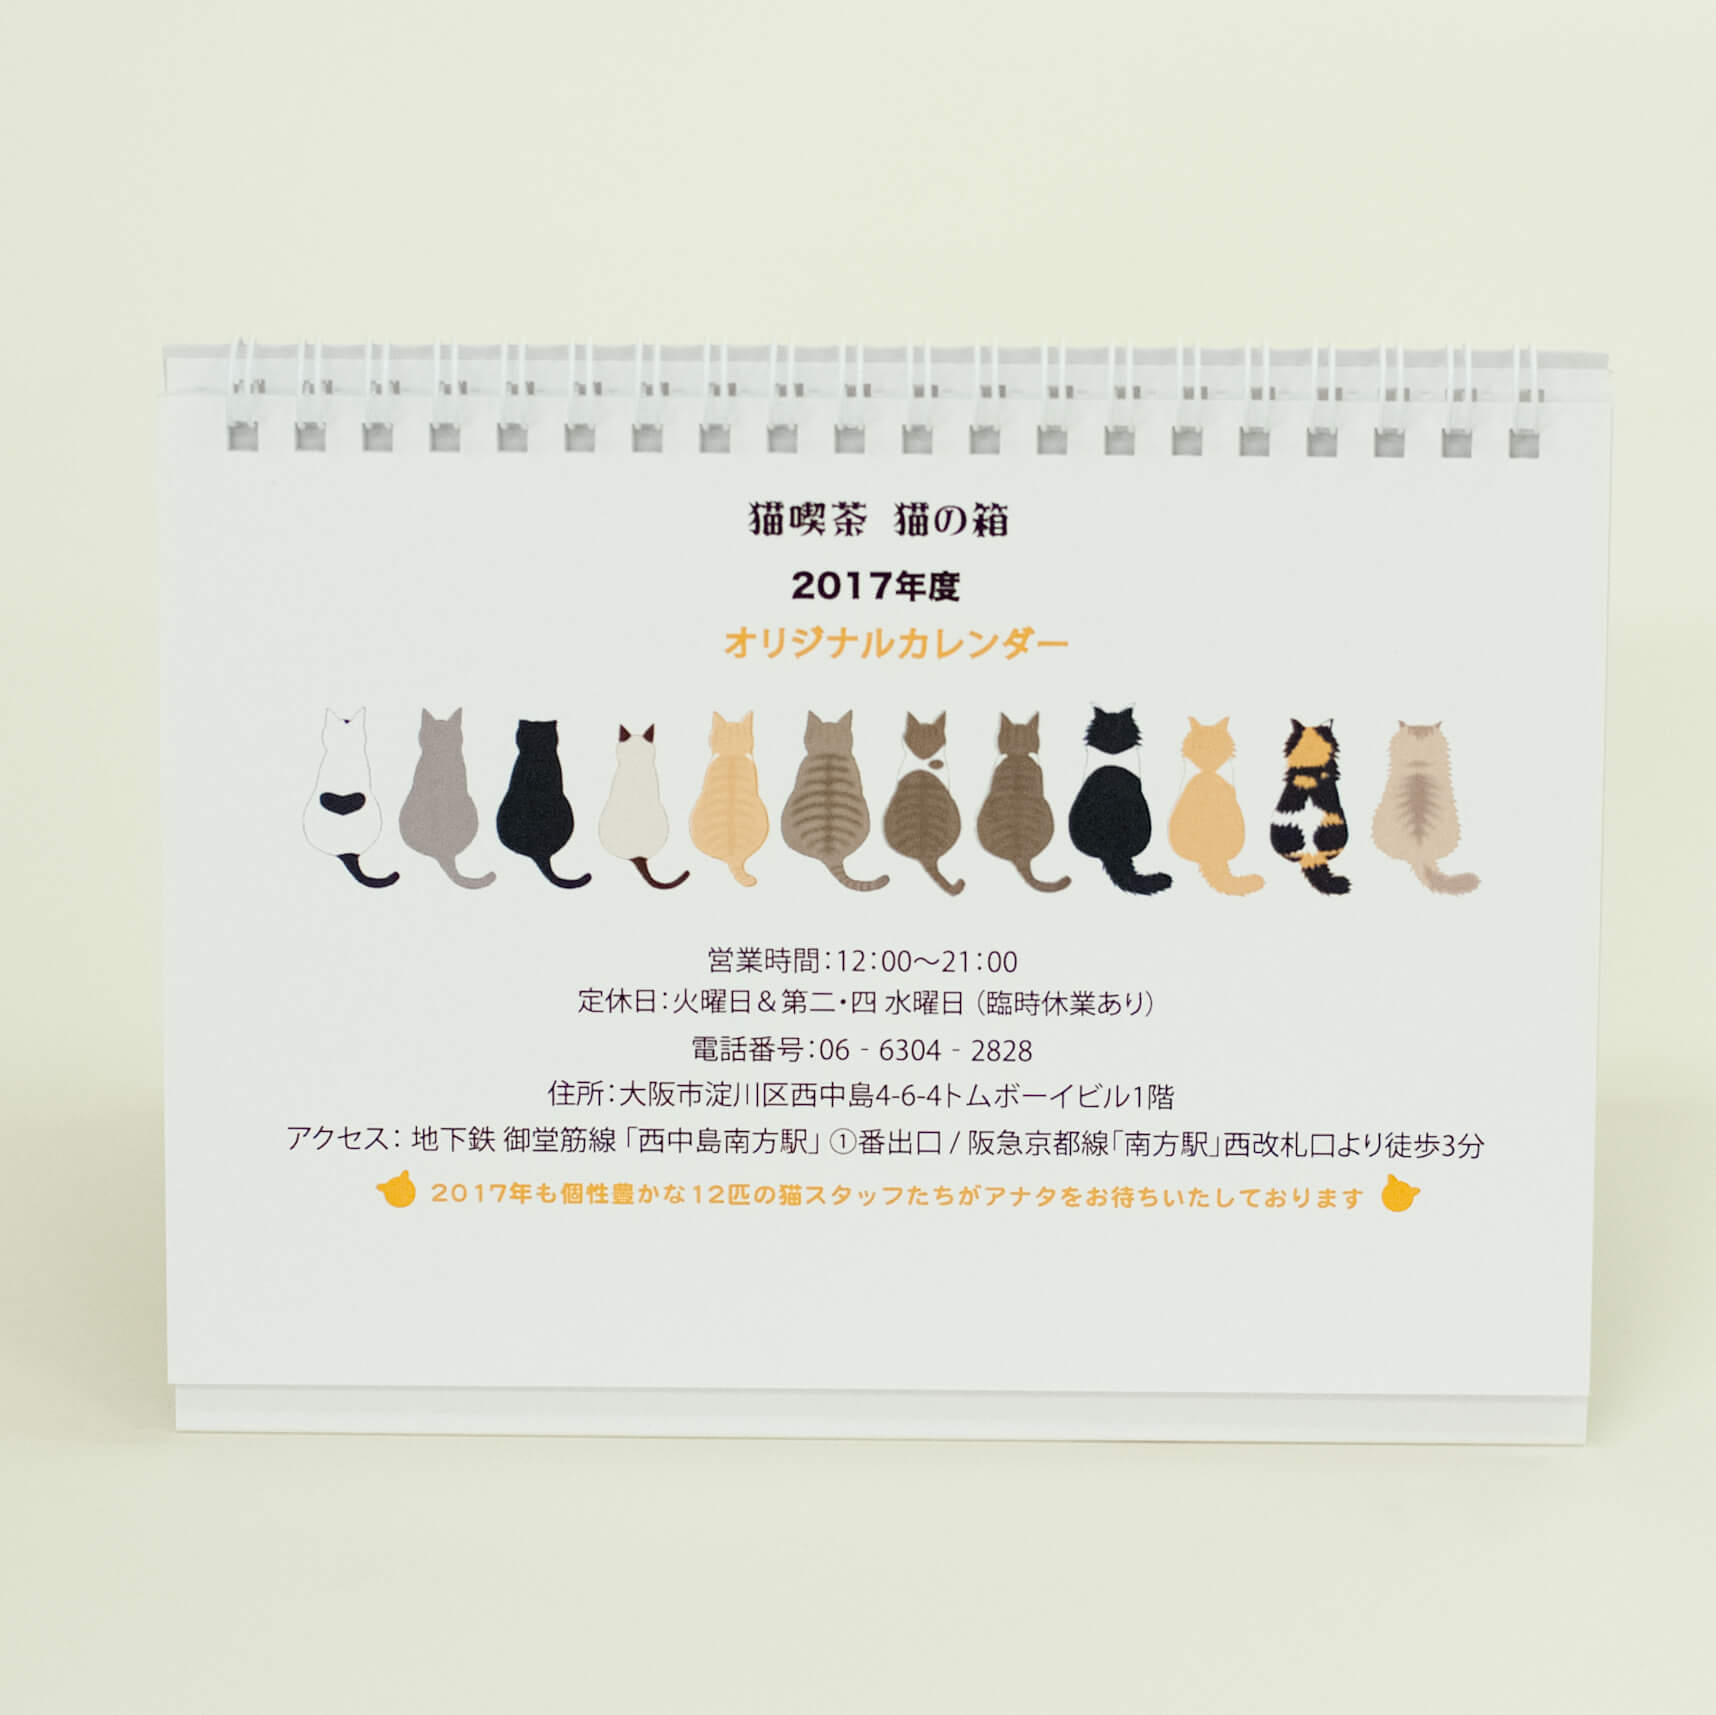 「大阪の猫カフェ・猫喫茶「猫の箱」 様」製作のオリジナルカレンダー